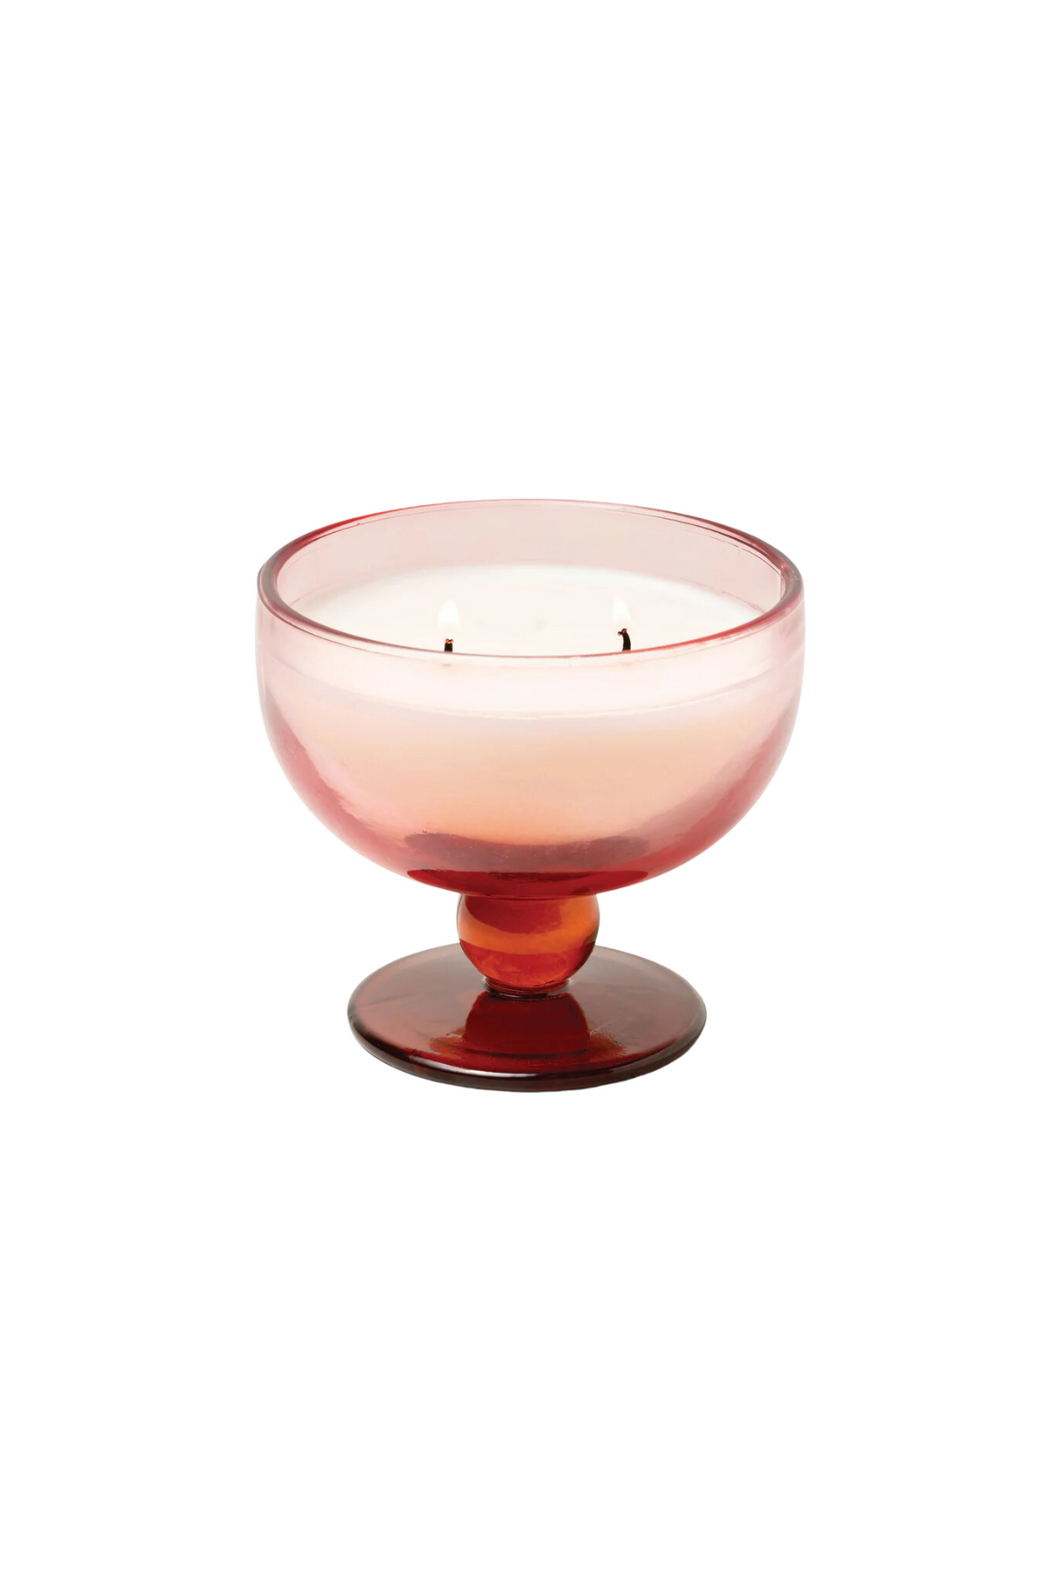 Aura Goblet Candle in Saffron Rose